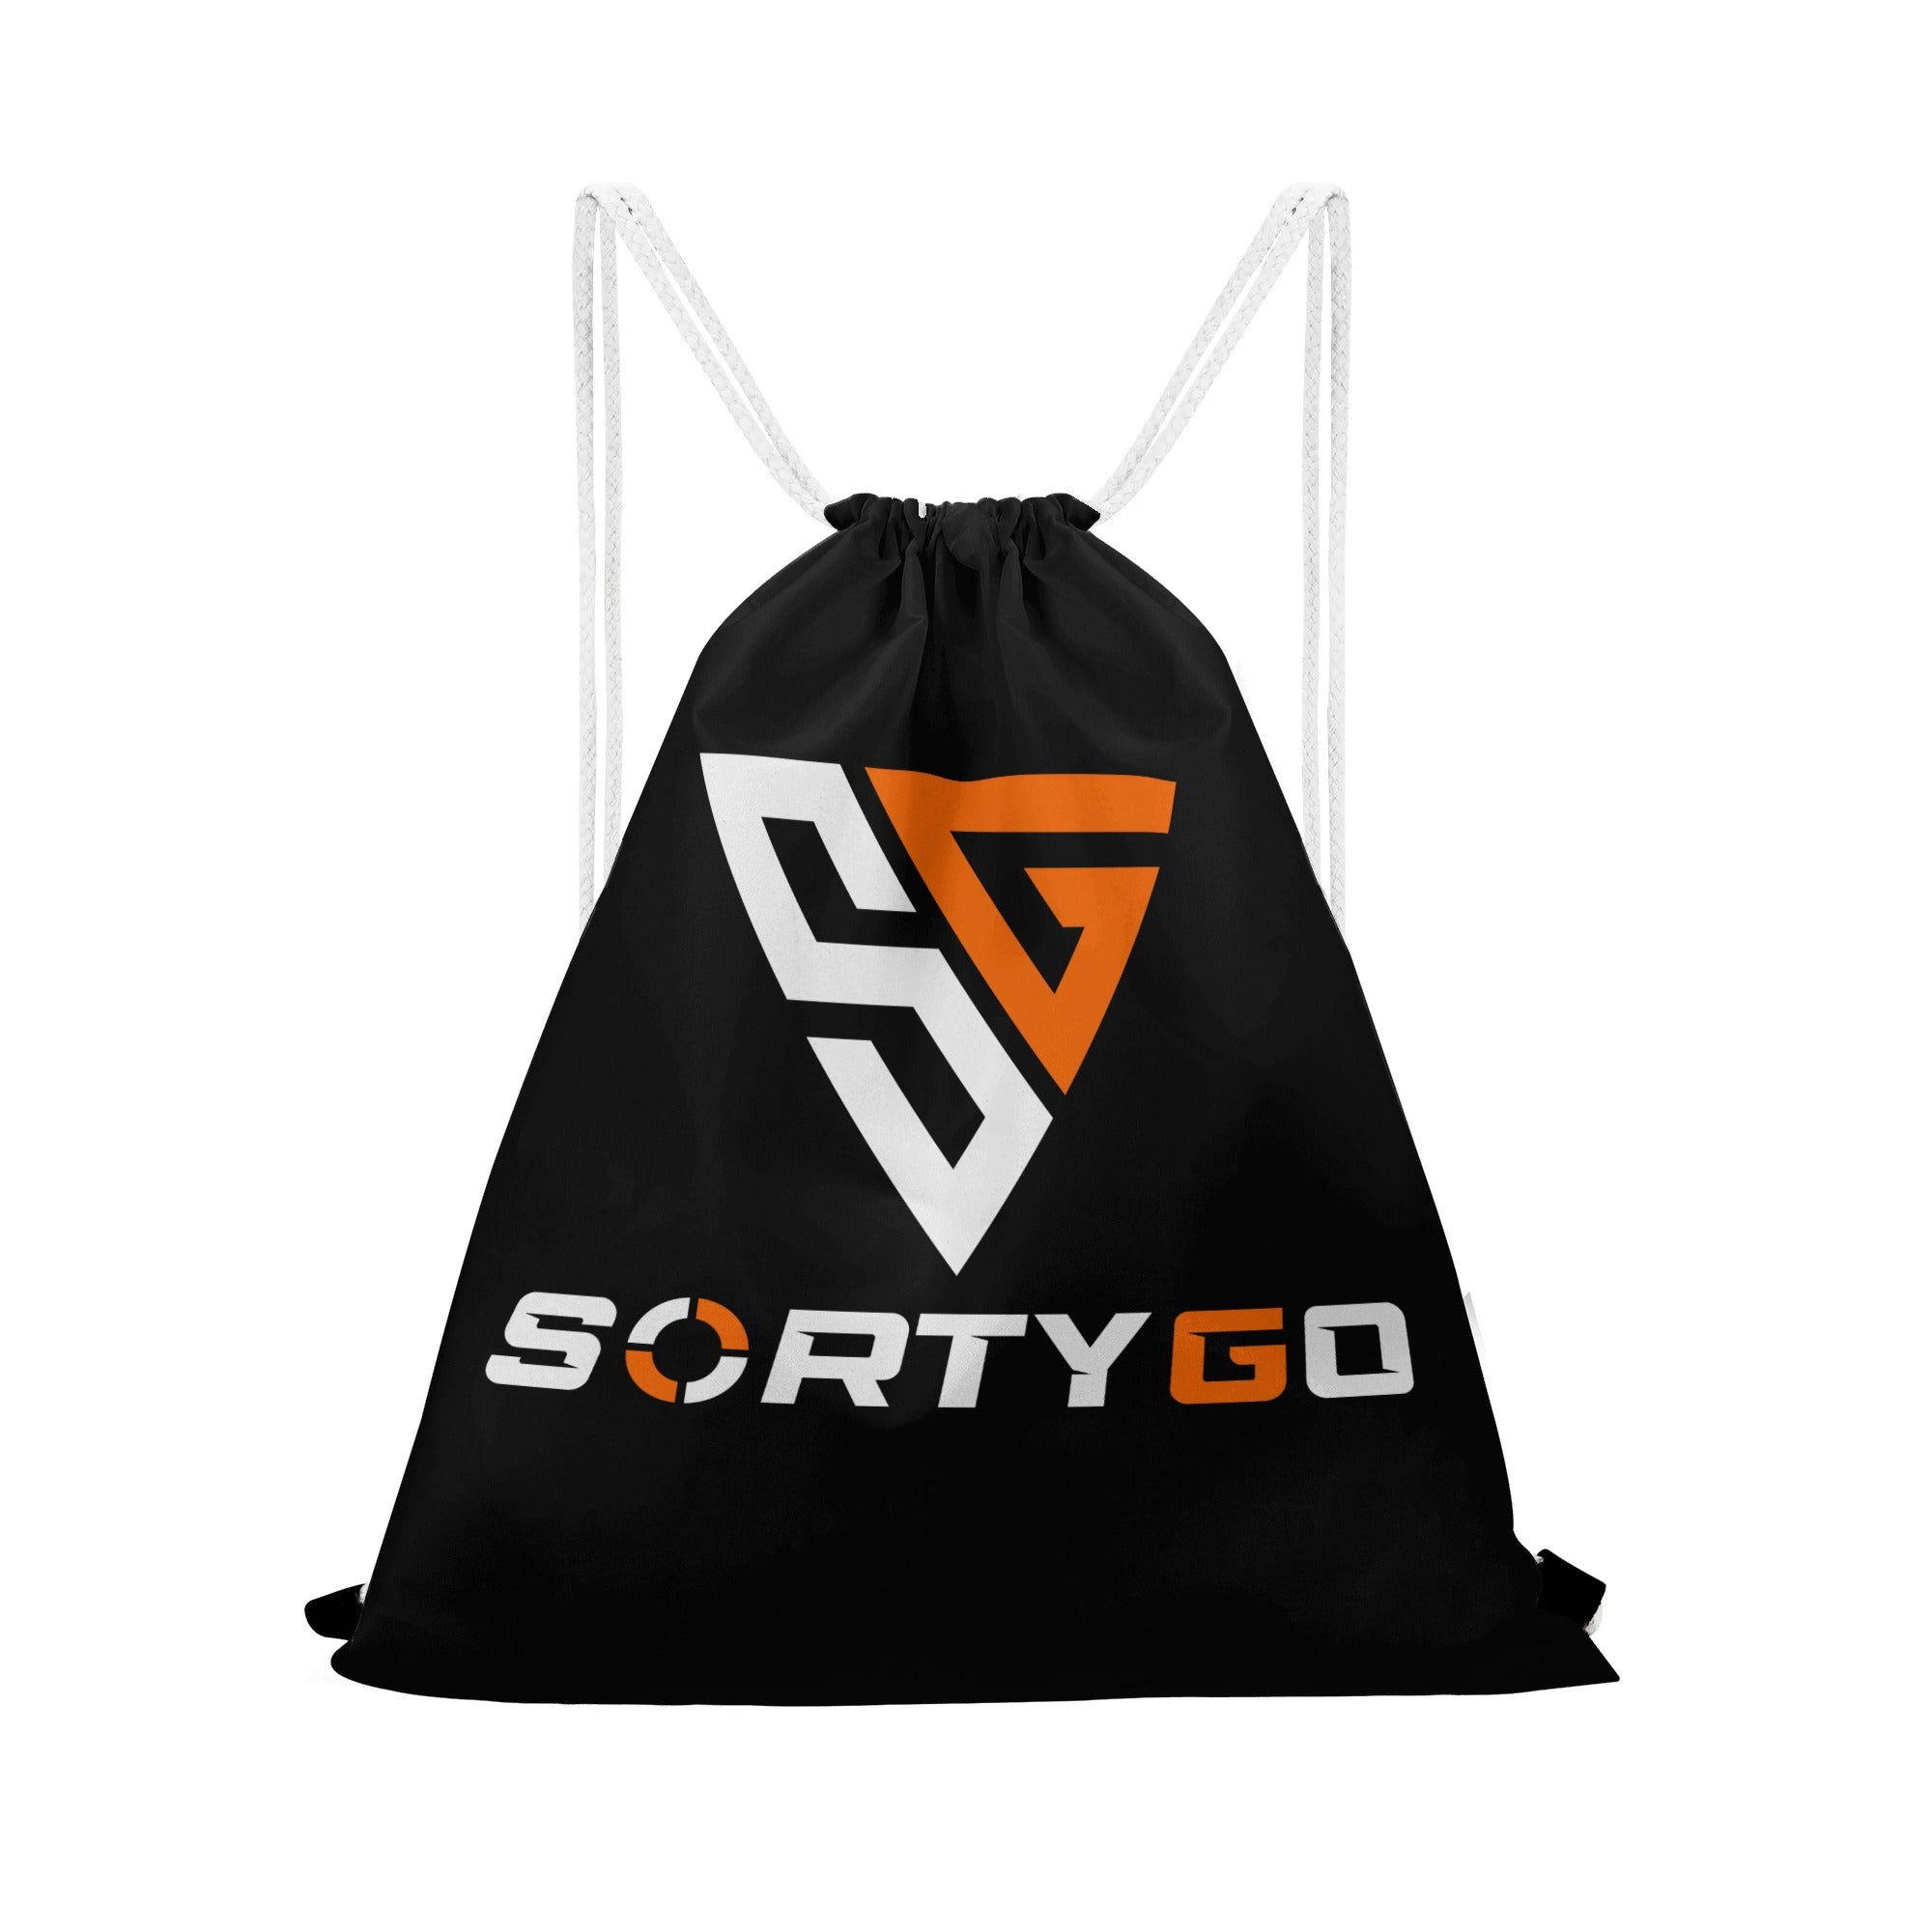 SORTYGO - Vivacity Drawstring Bag in